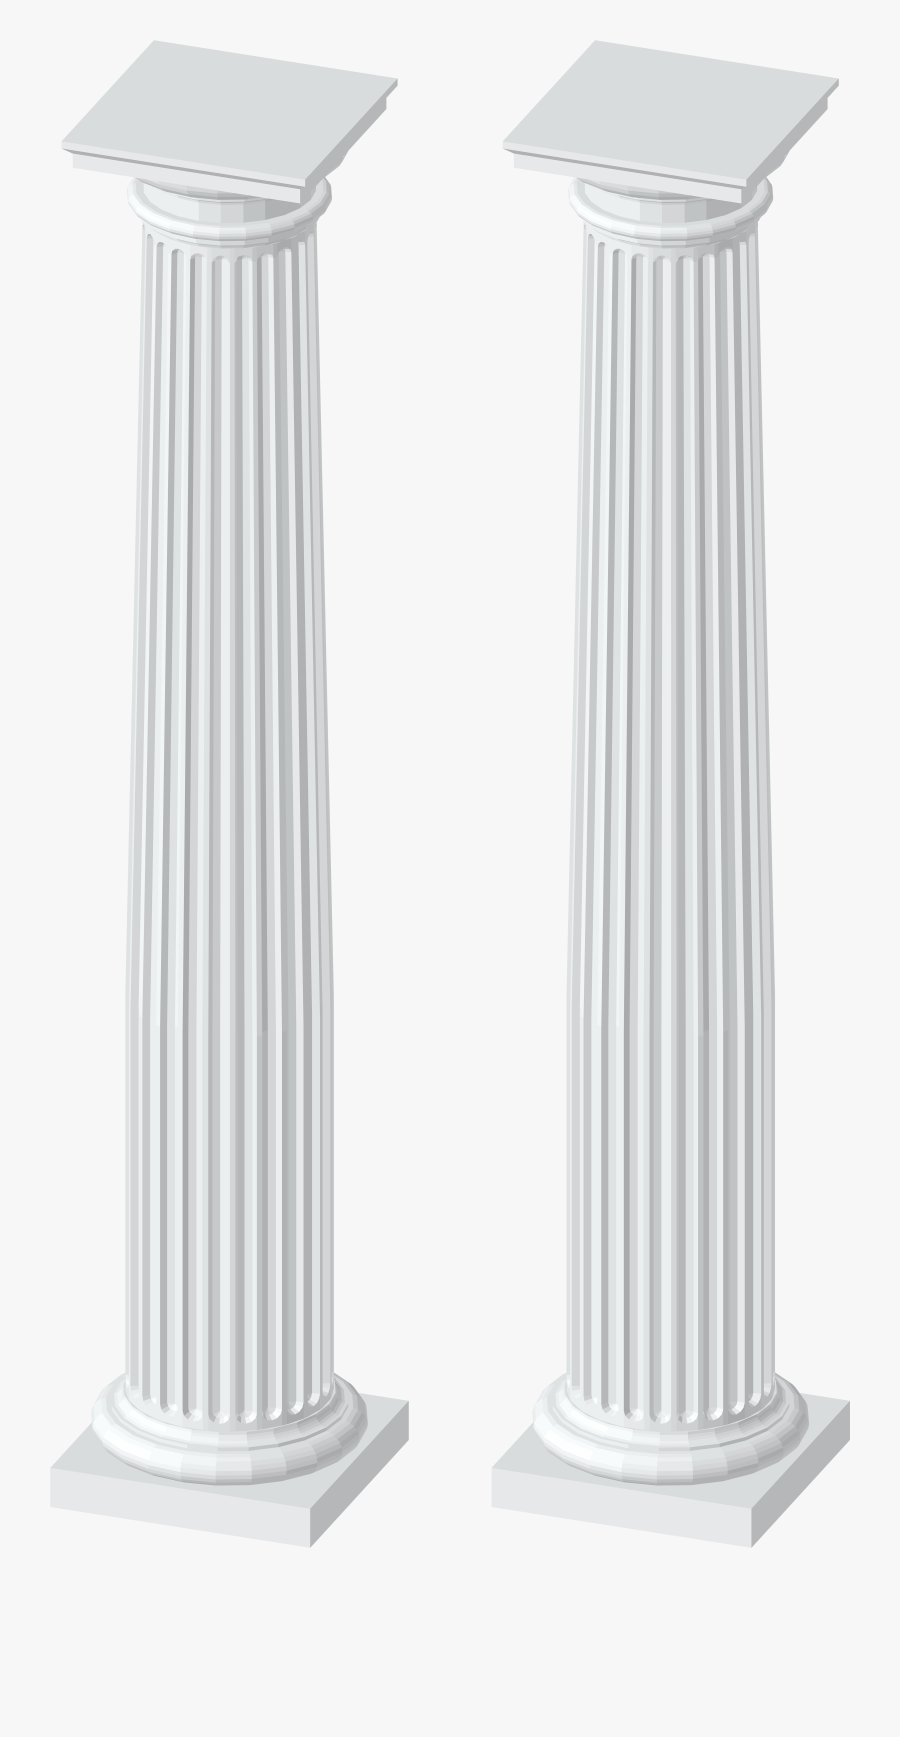 Clip Art White Columns Transparent Png - Column, Transparent Clipart